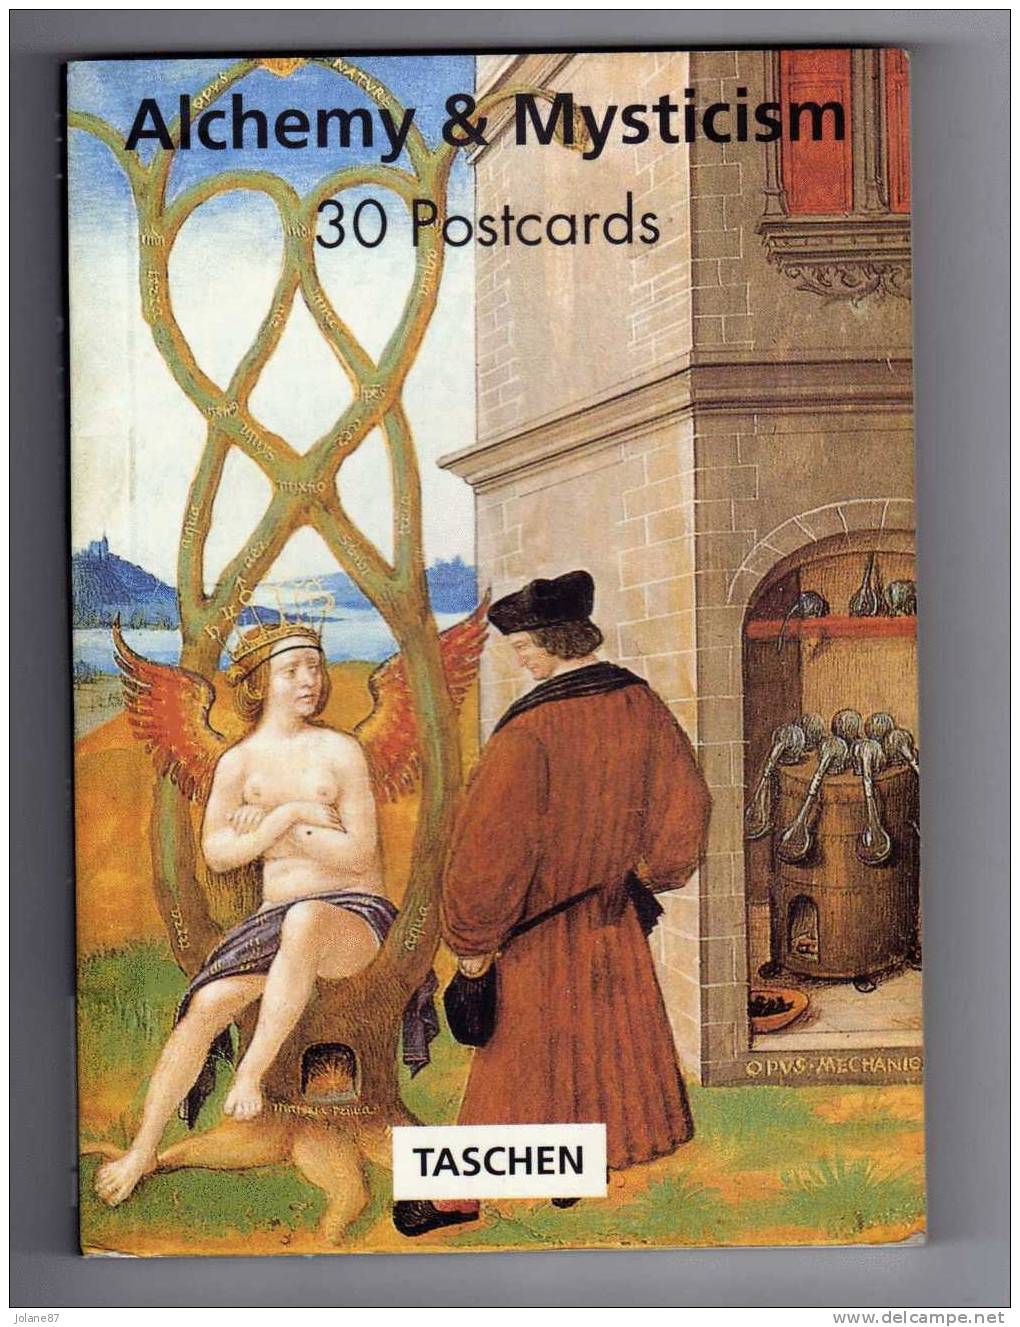 LIVRET DE 30 CARTES POSTALES     -  ALCHEMY & MISTICISM   -   ALCHIMIE ET MYSTICISME   -   TASCHEN - Livres & Catalogues